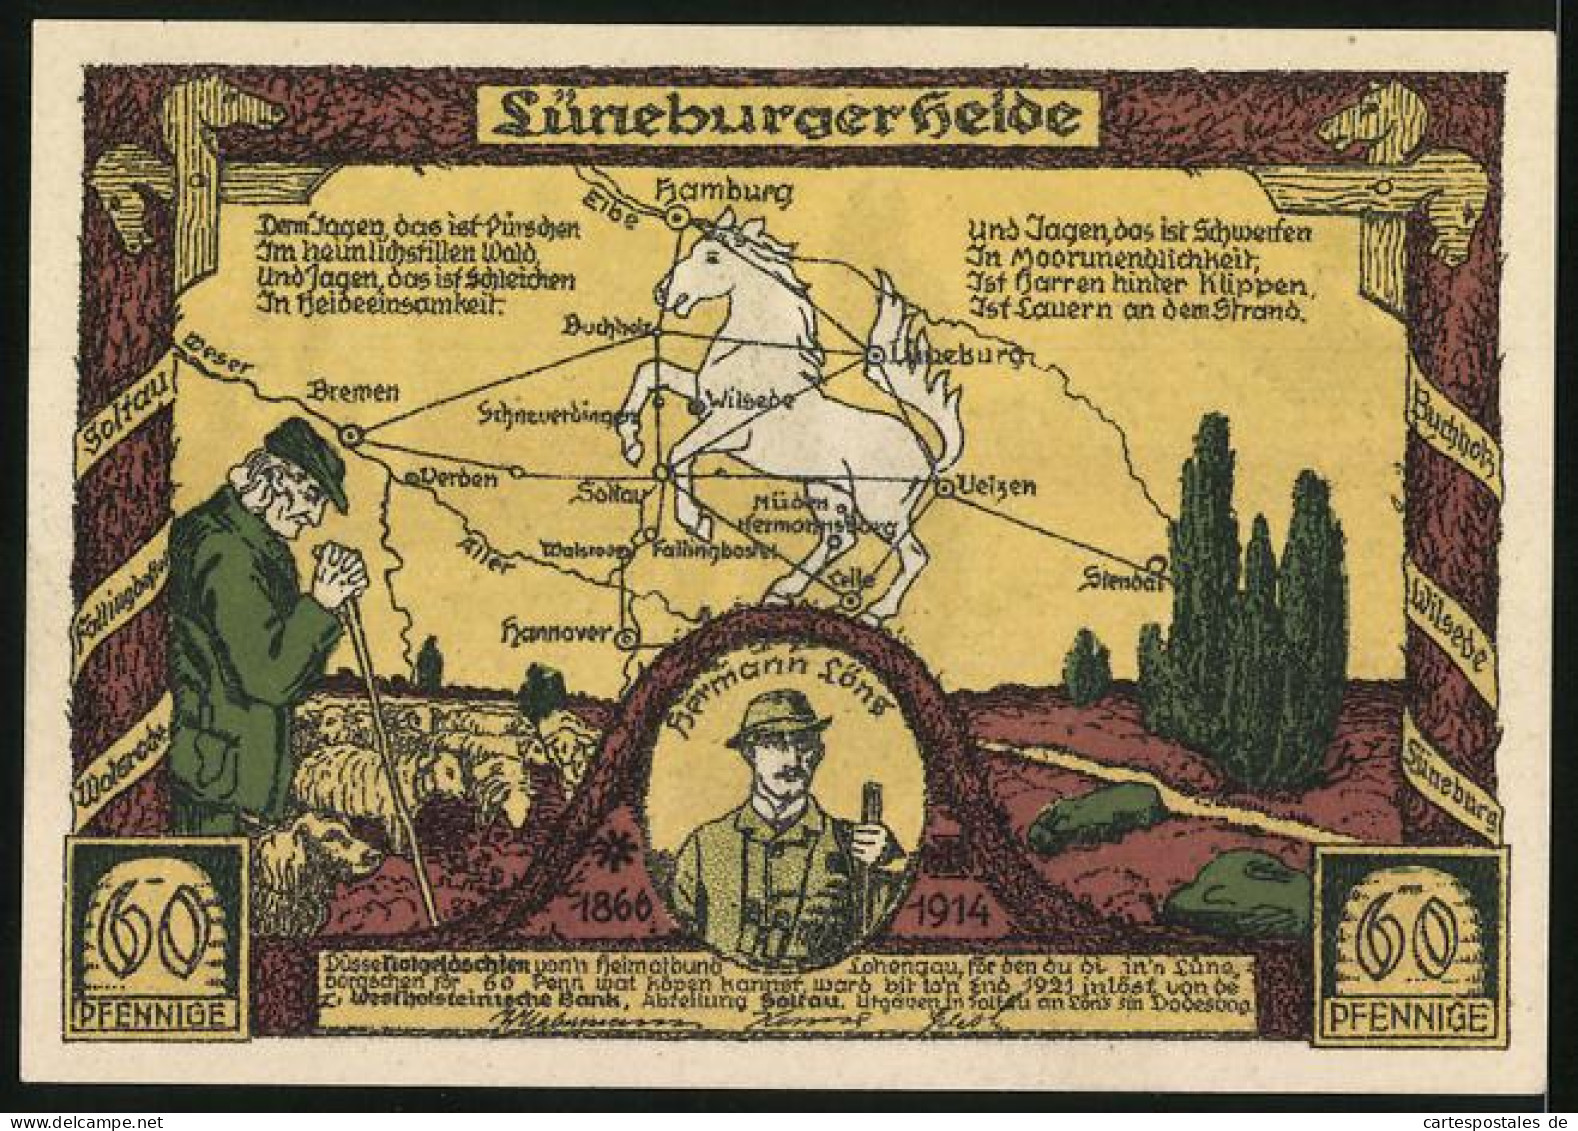 Notgeld Soltau 1921, 60 Pfennig, Buchholz, Schafstall Und Bienenzaun, Landkarte Lüneb. Heide Mit Schäfer, H. Löns  - [11] Local Banknote Issues